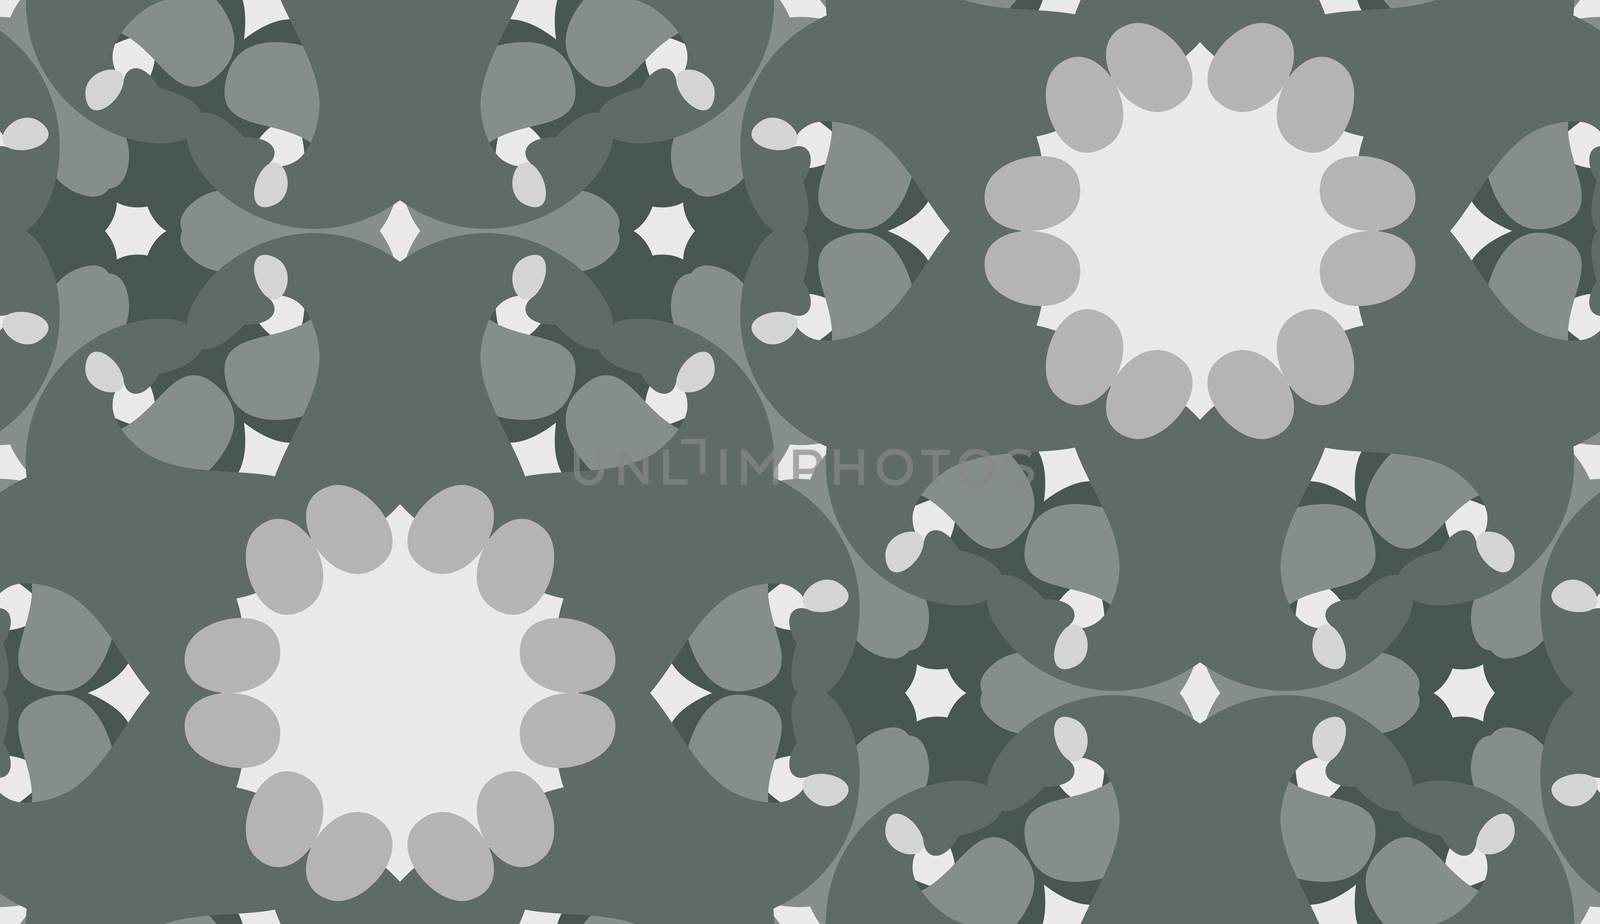 Seamless pattern of gray geometric kaleidoscope shapes